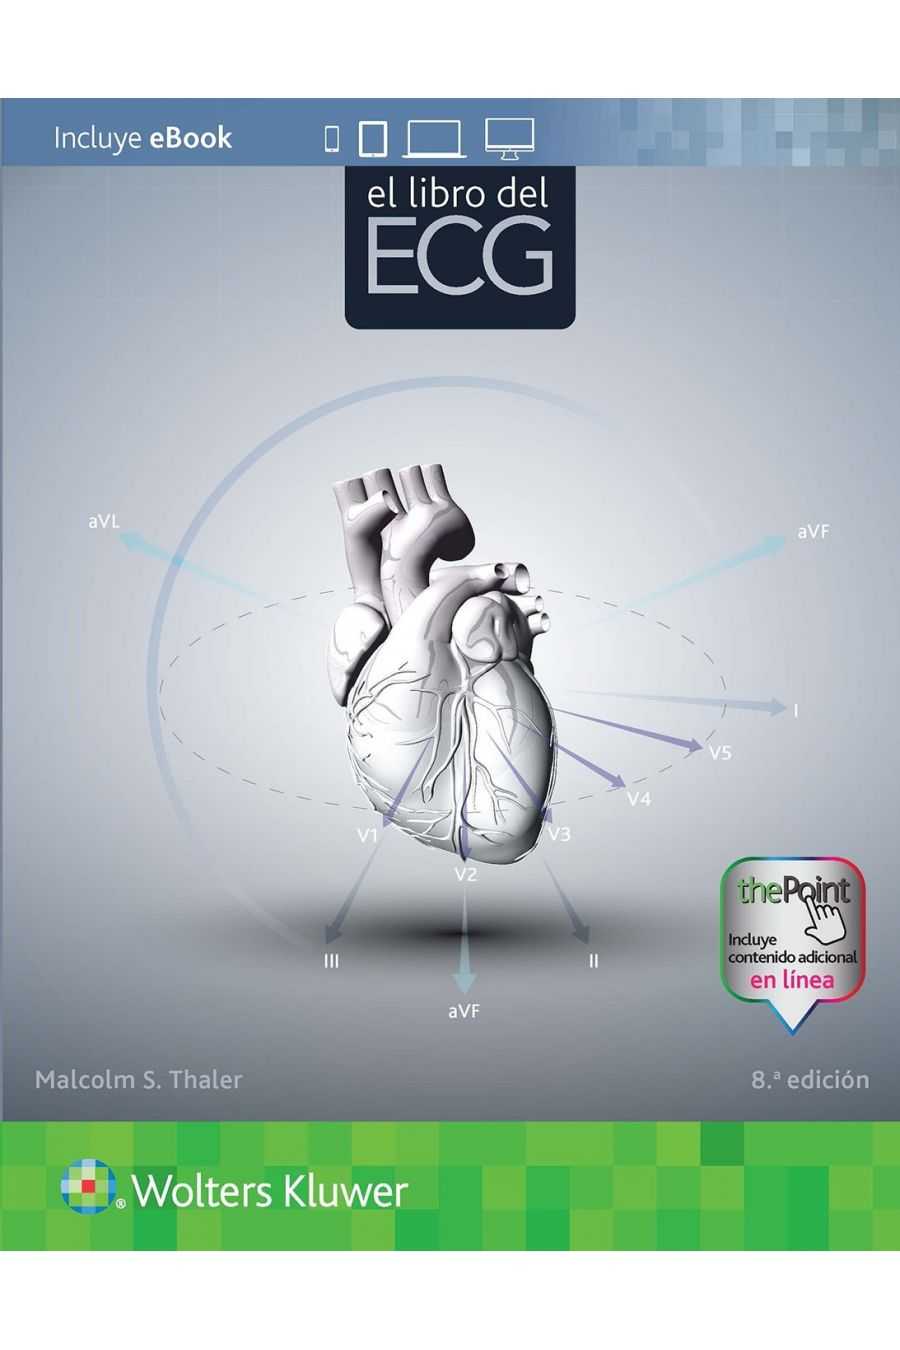 El Libro del ECG. Thaler